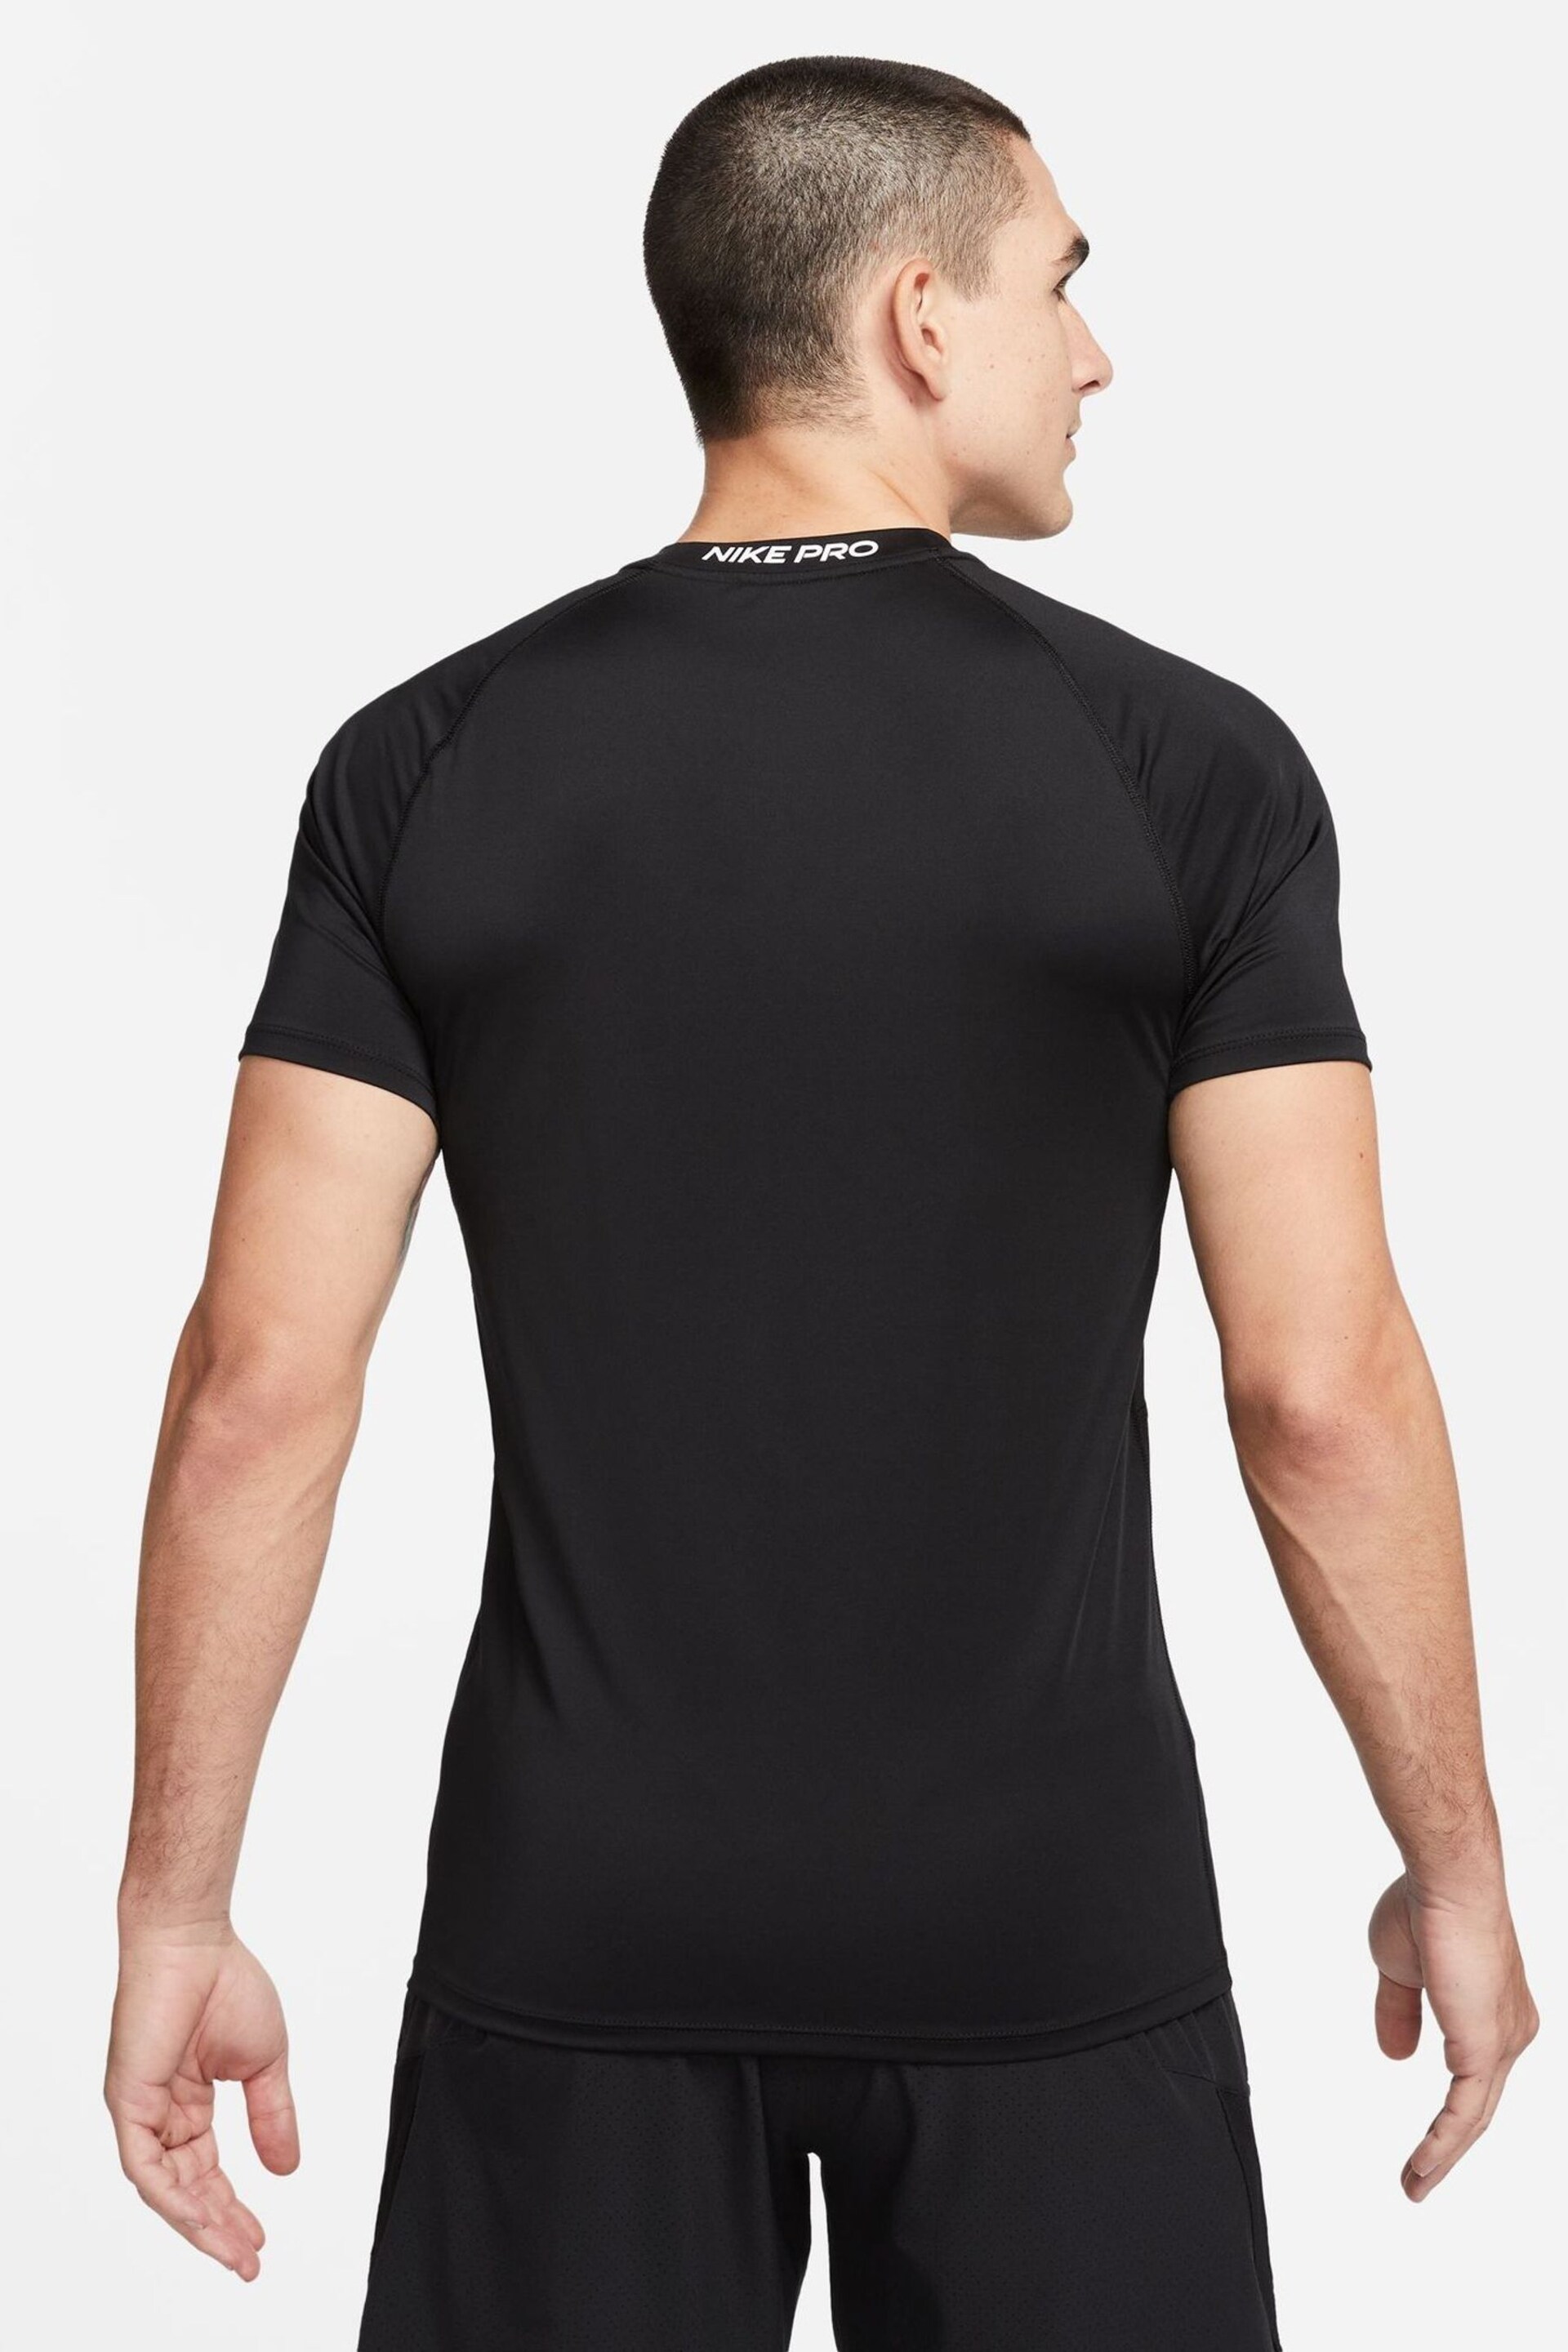 Nike Black Pro Dri-FIT Slim T-Shirt - Image 2 of 5